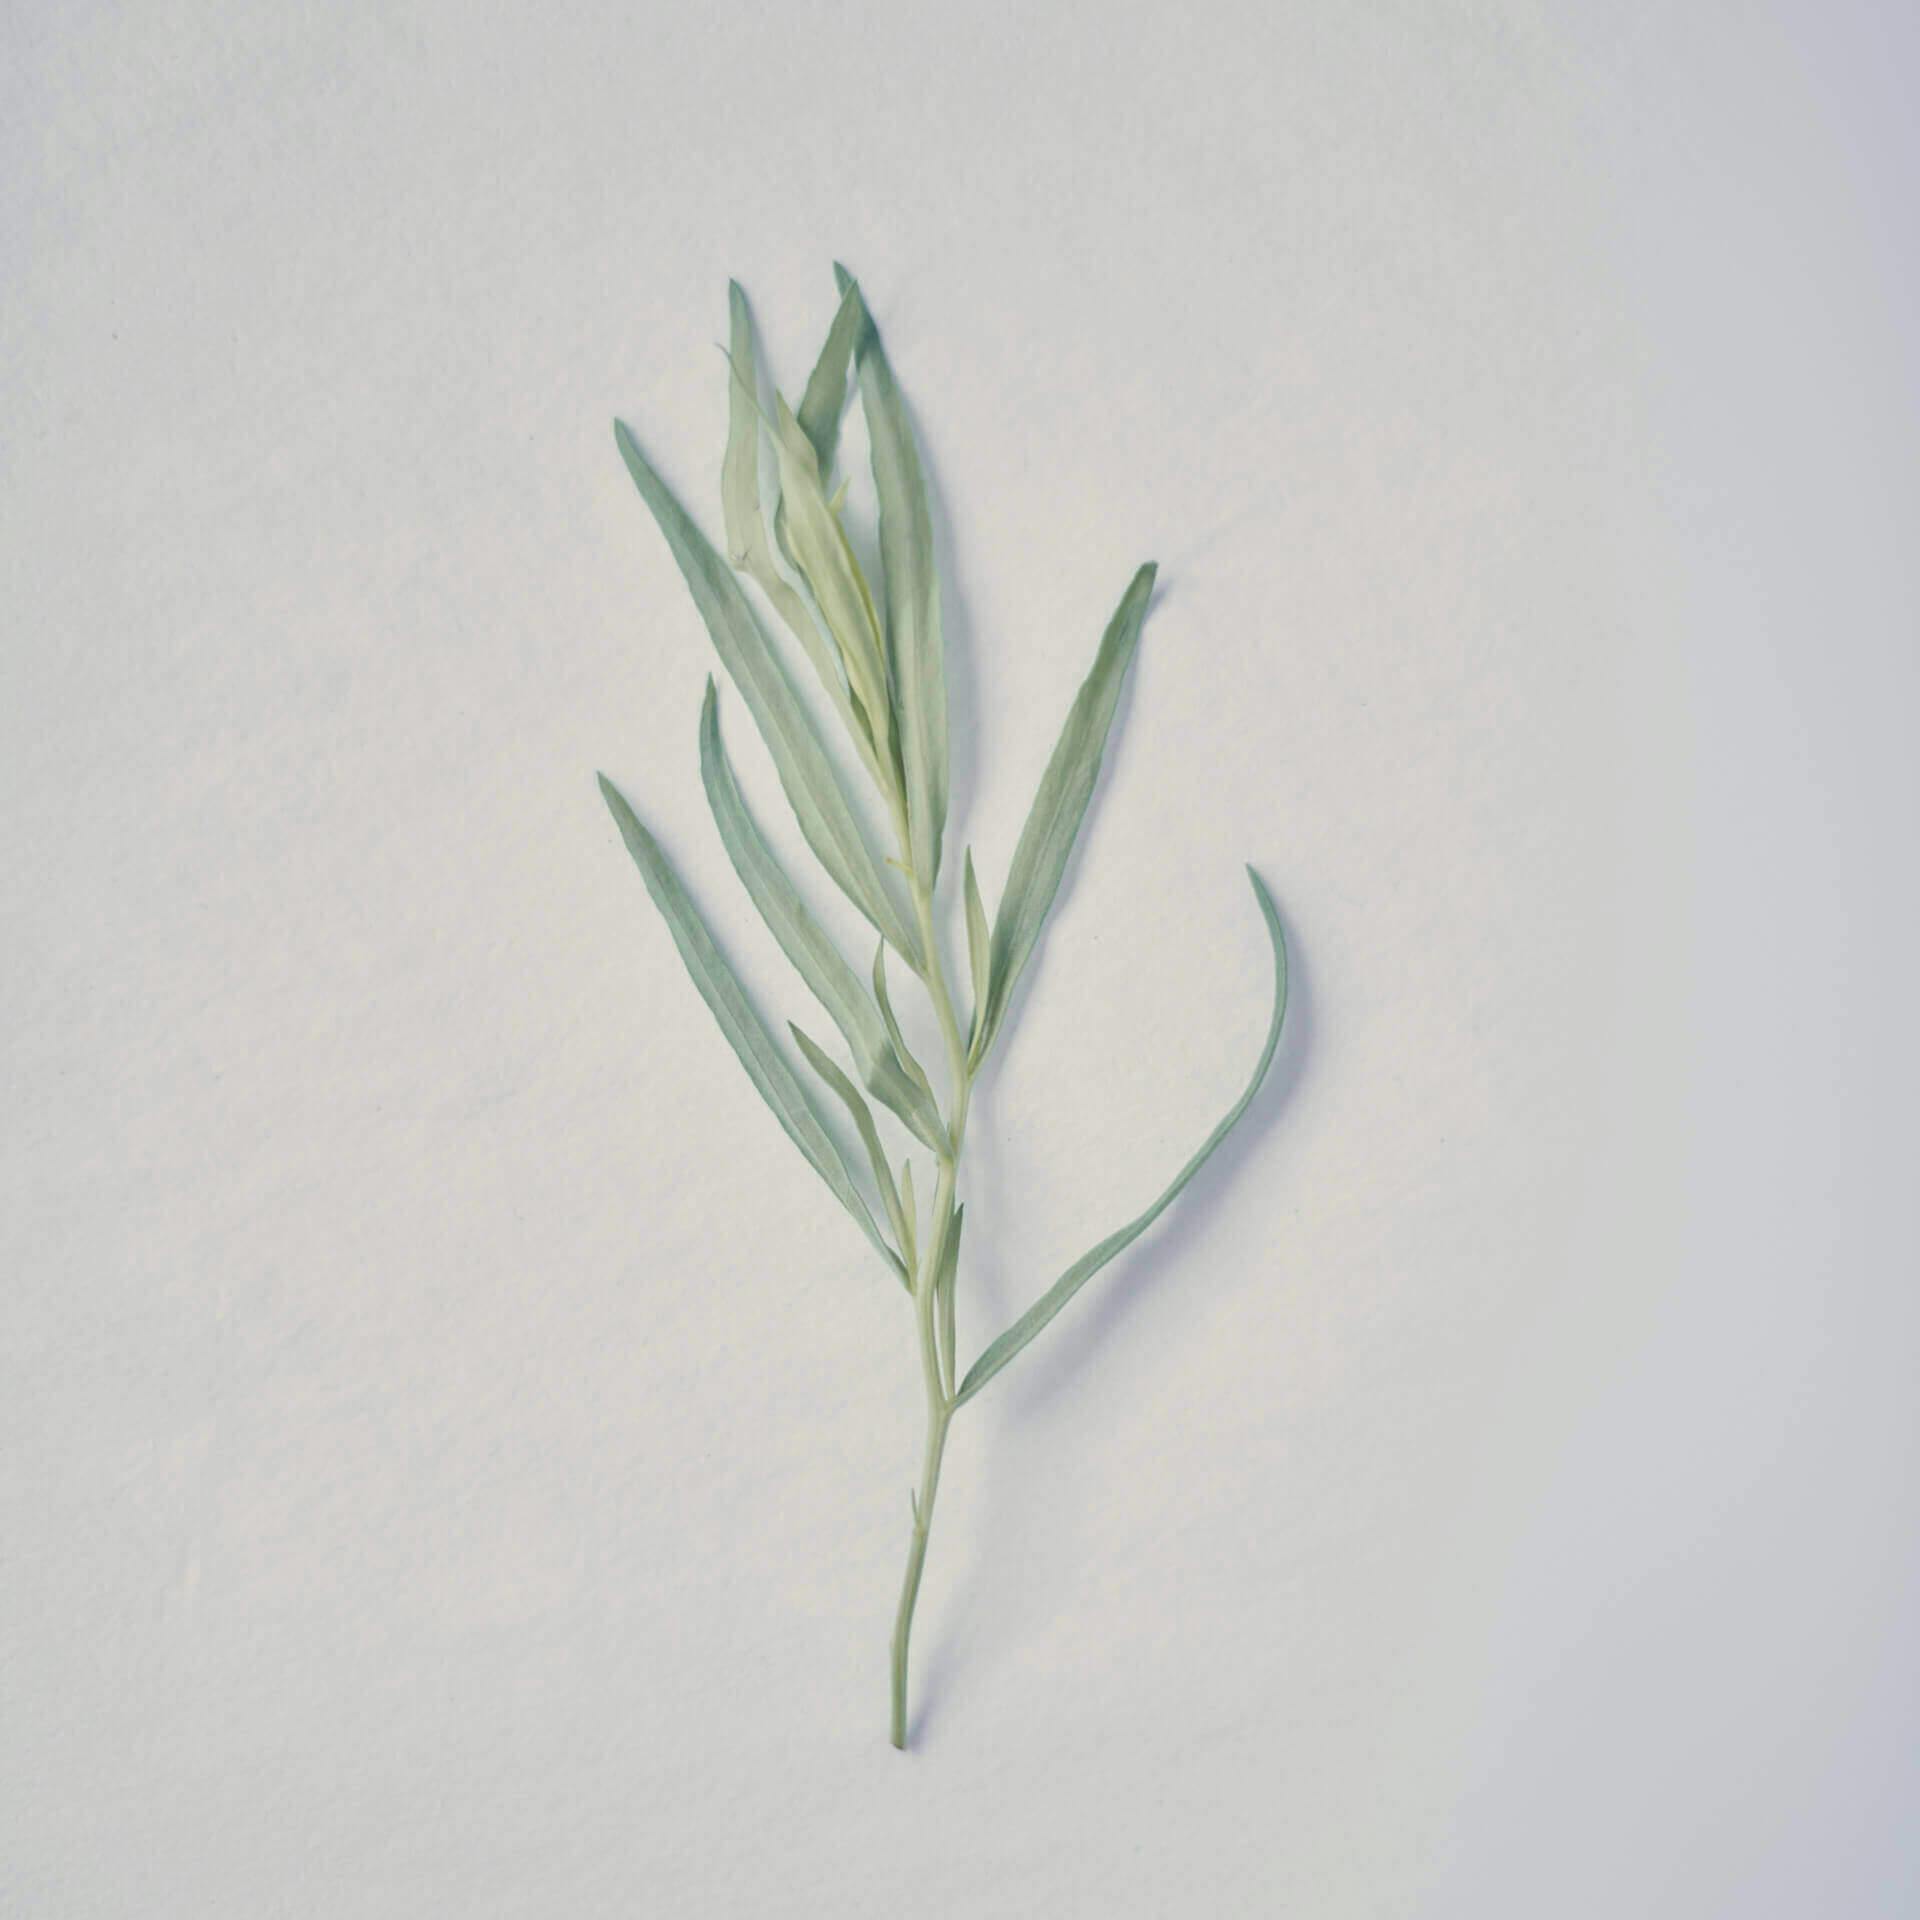 Organic Tarragon leaf, Ffern perfumery ingredient